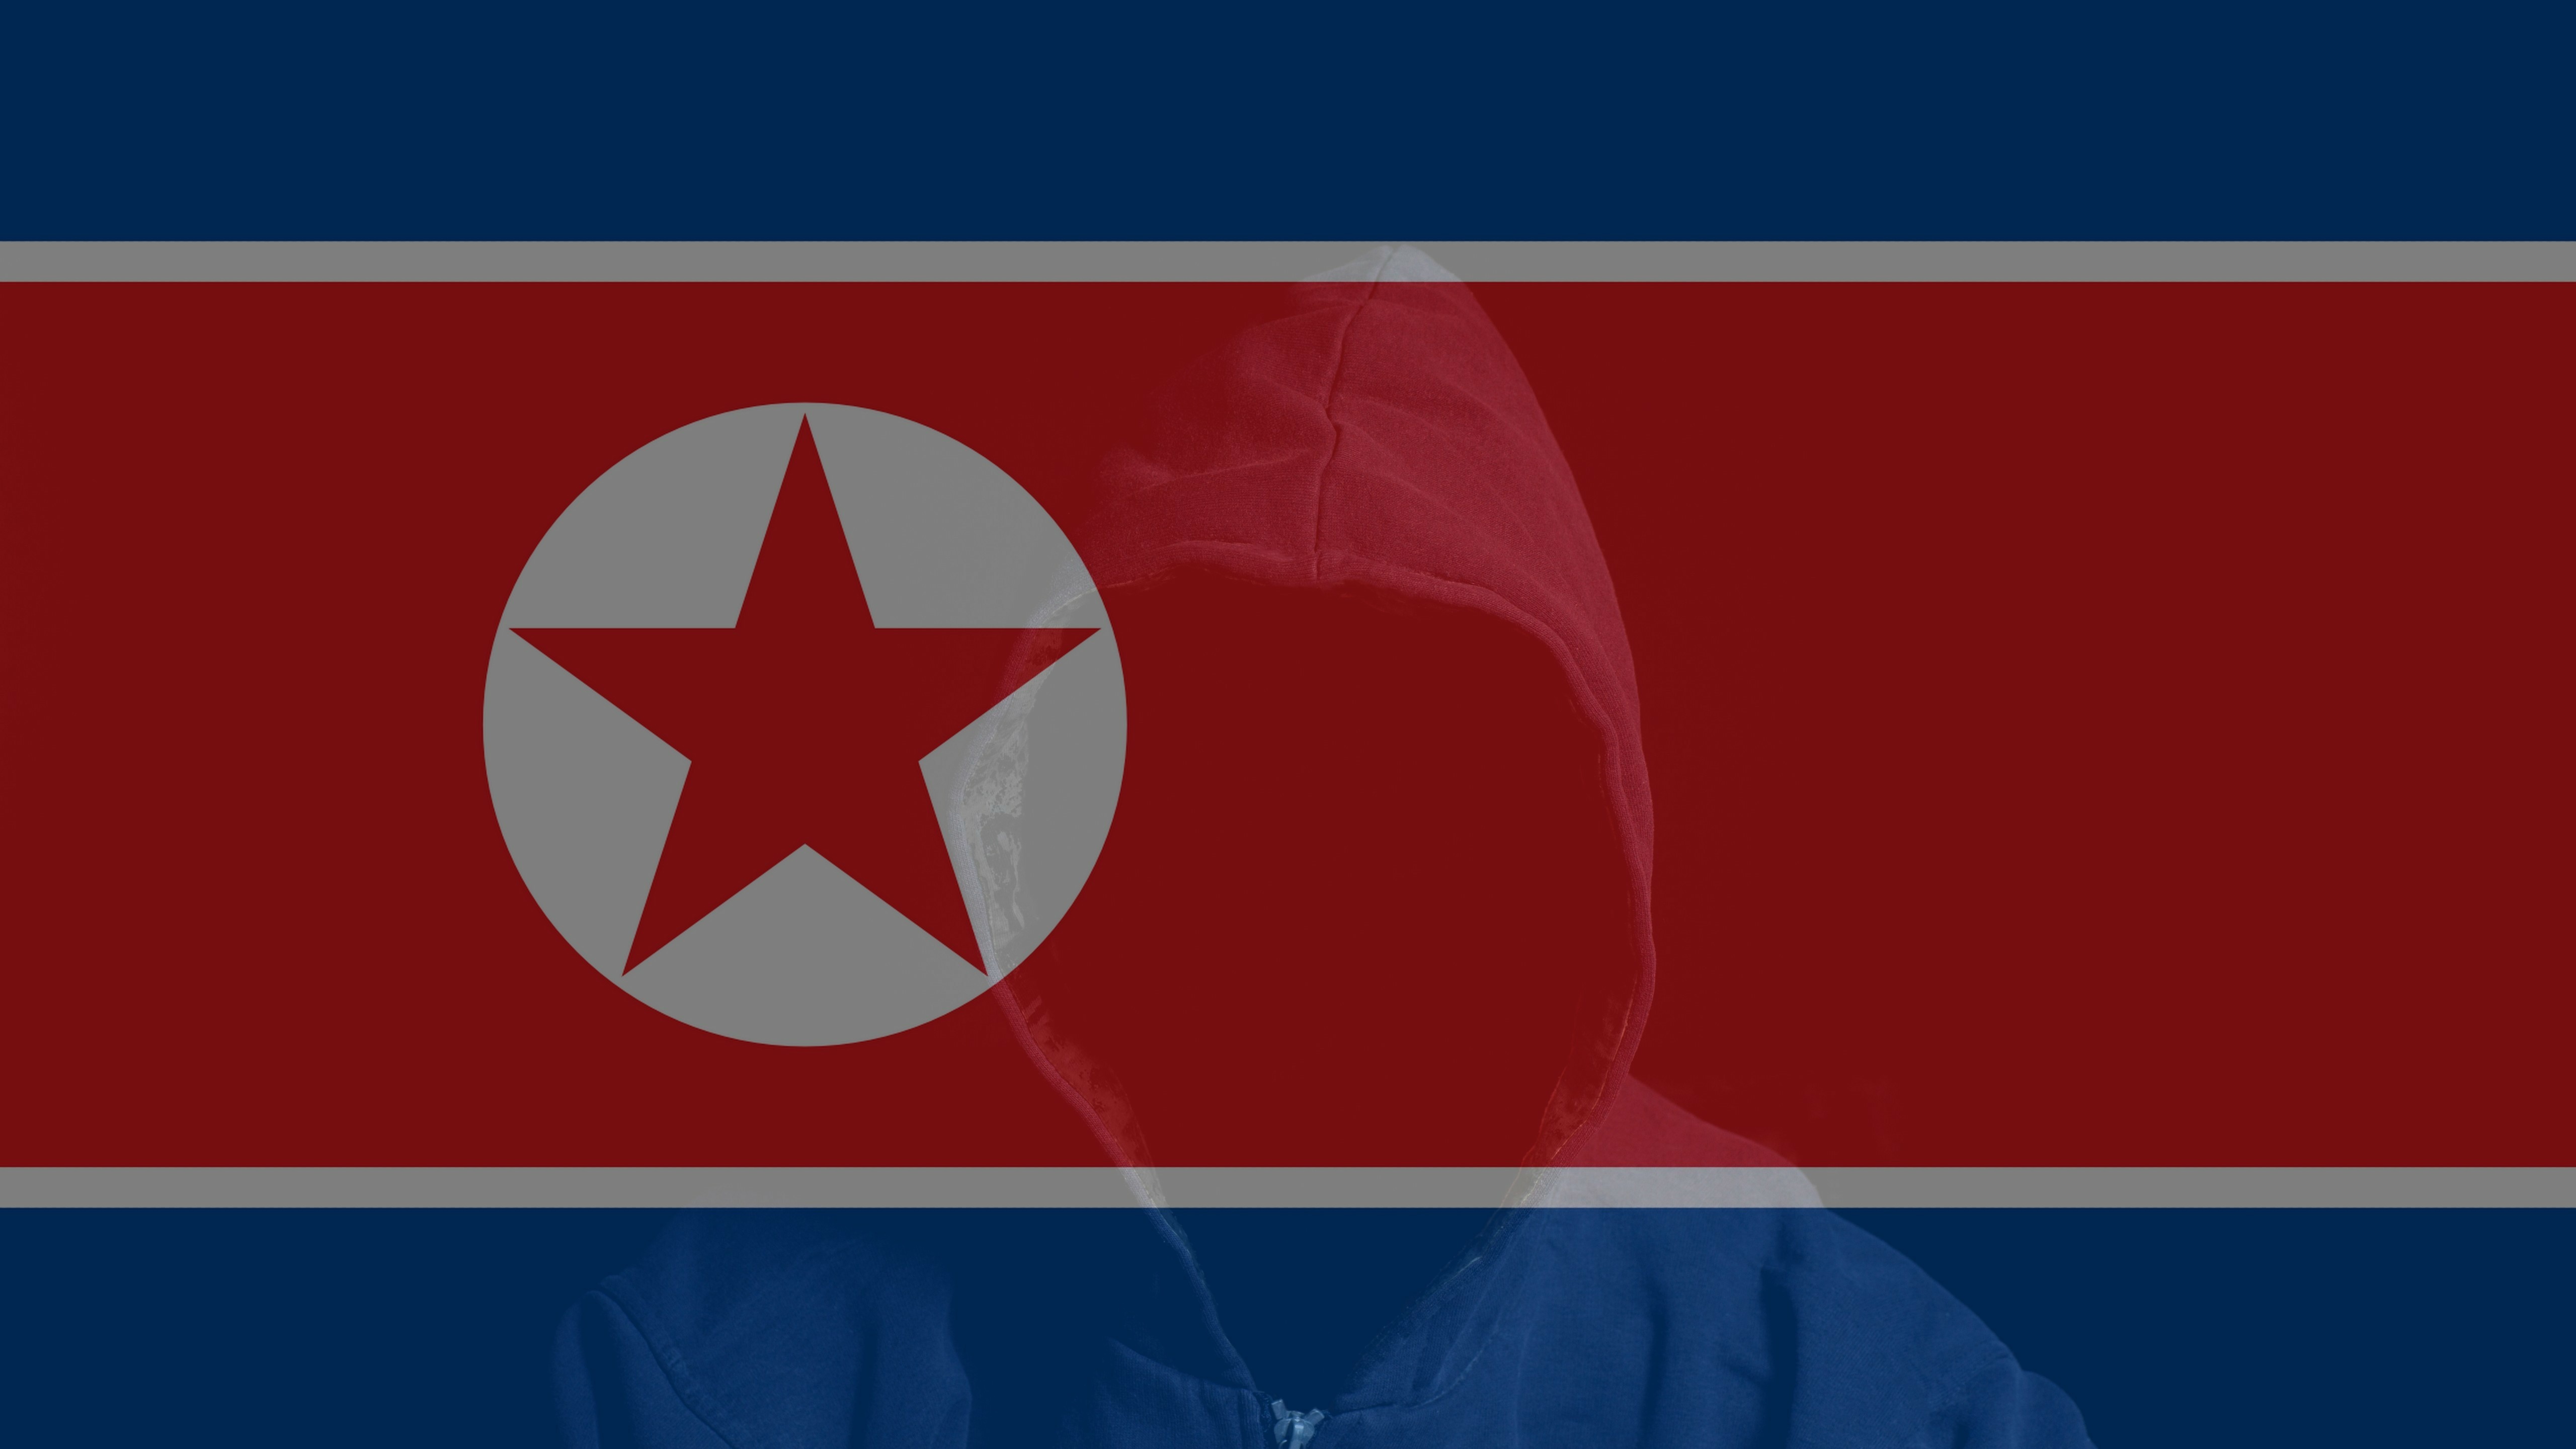 朝鮮國旗，前景中坐著一個蒙面人物。